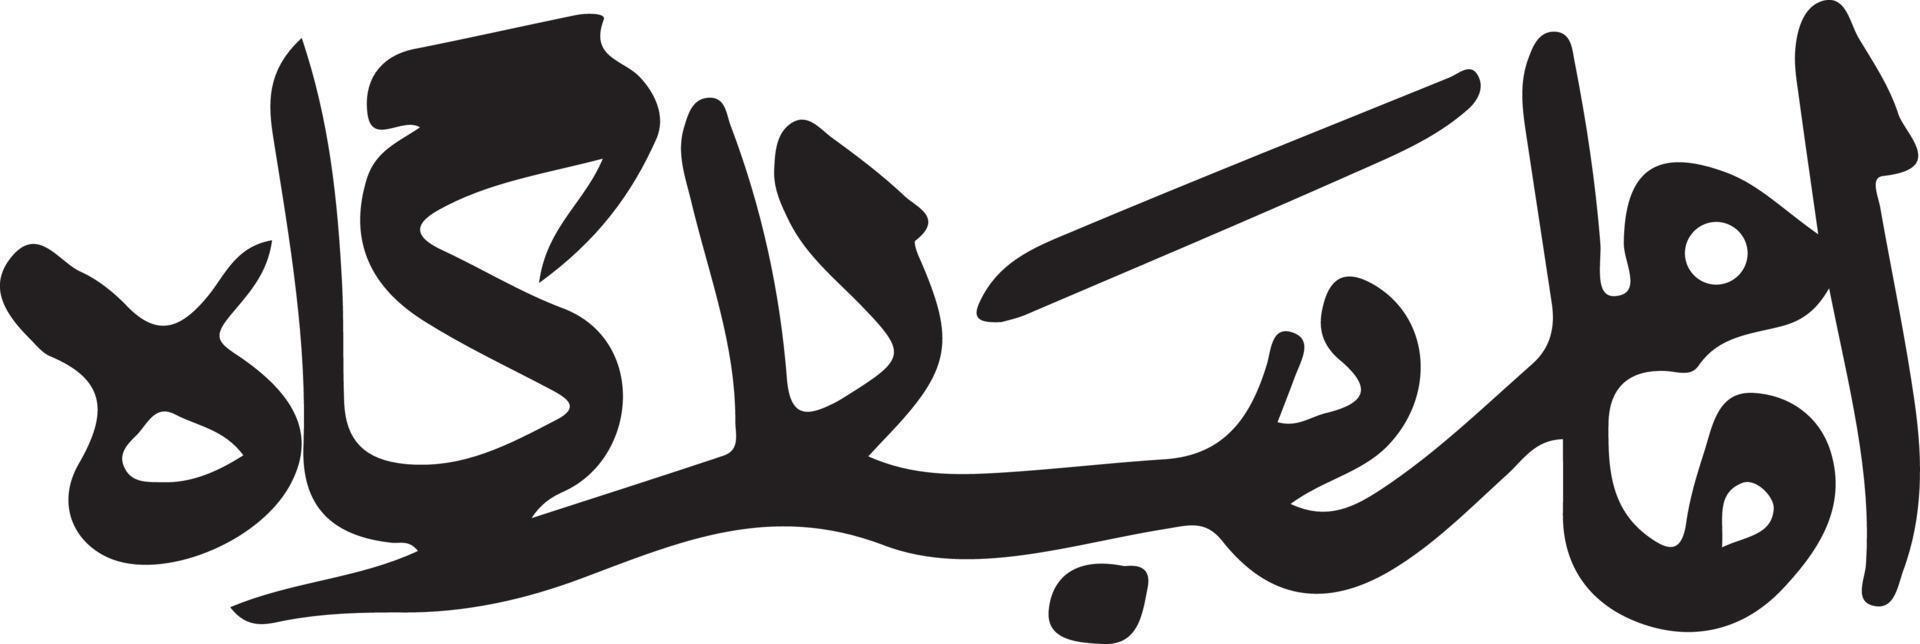 imam bargha caligrafía árabe islámica vector libre